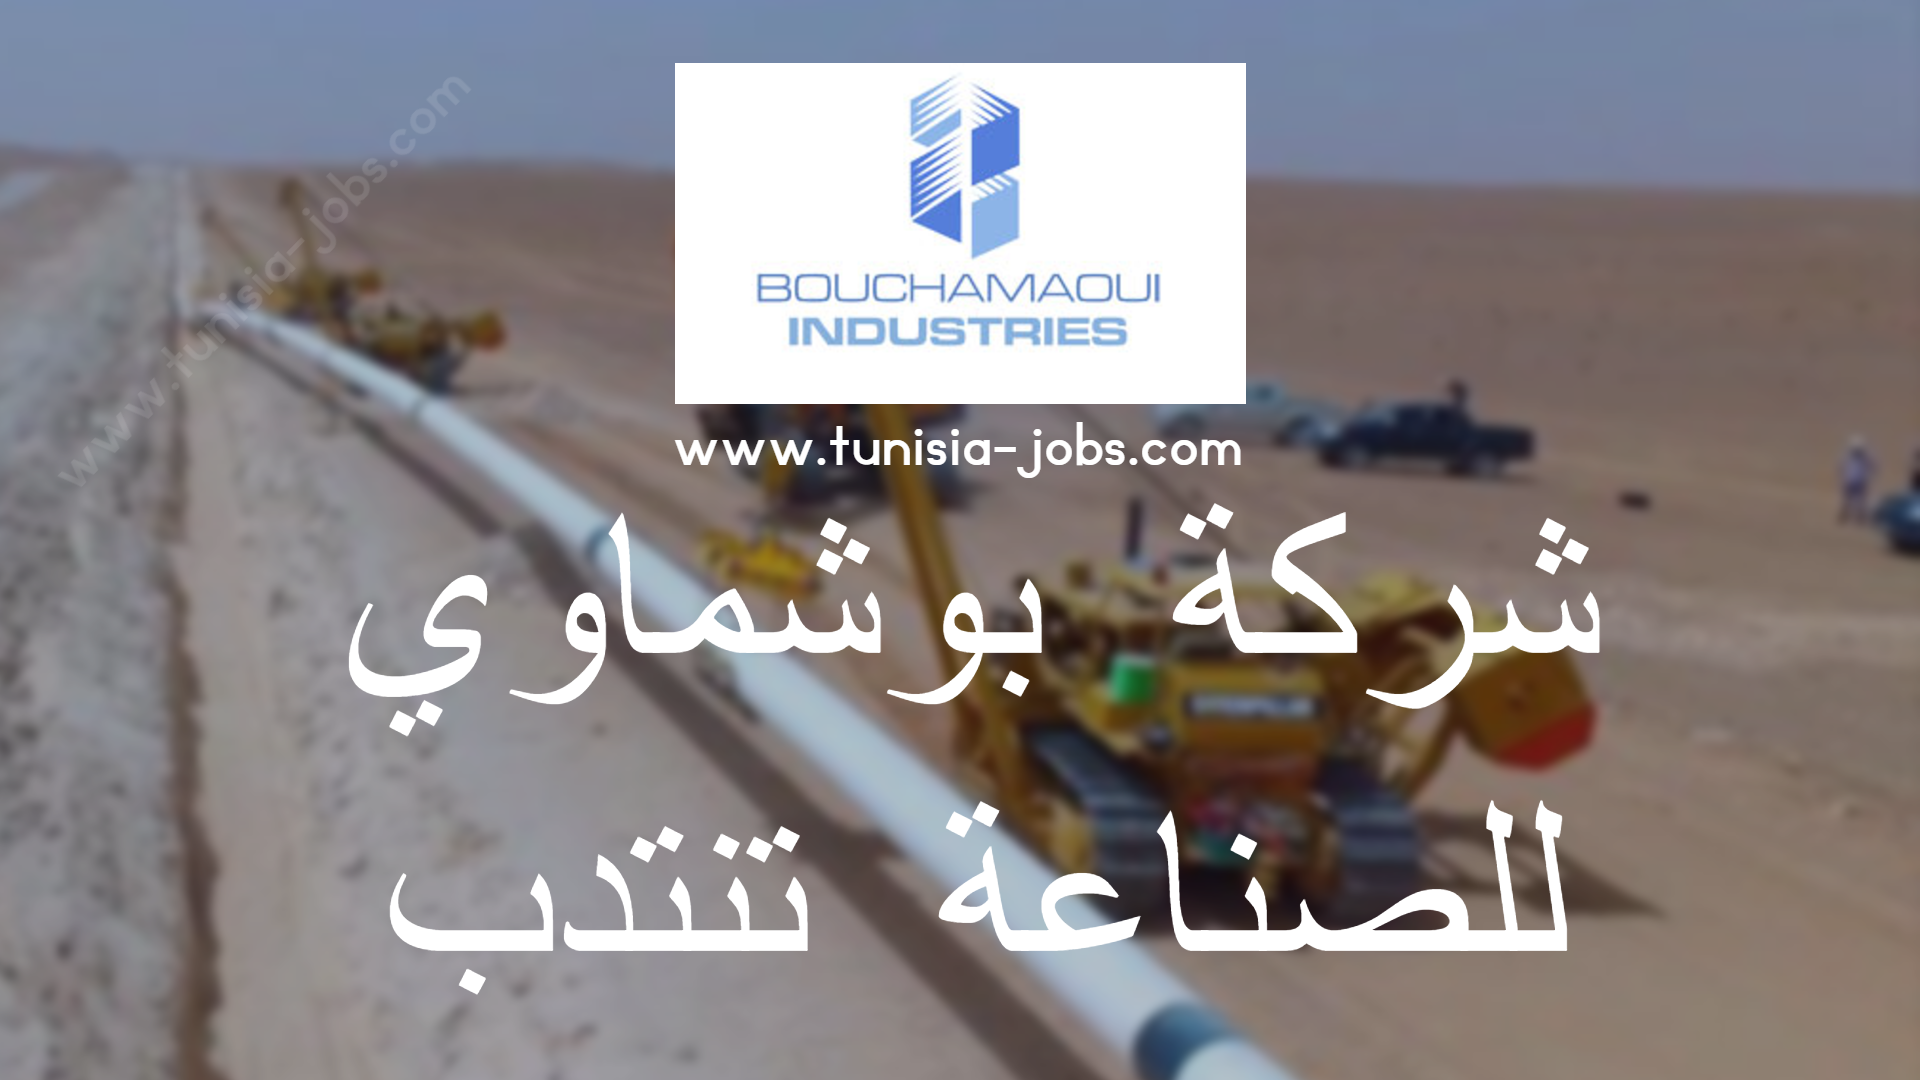 شركة بوشماوي للصناعة تنتدب Tunisia Jobs